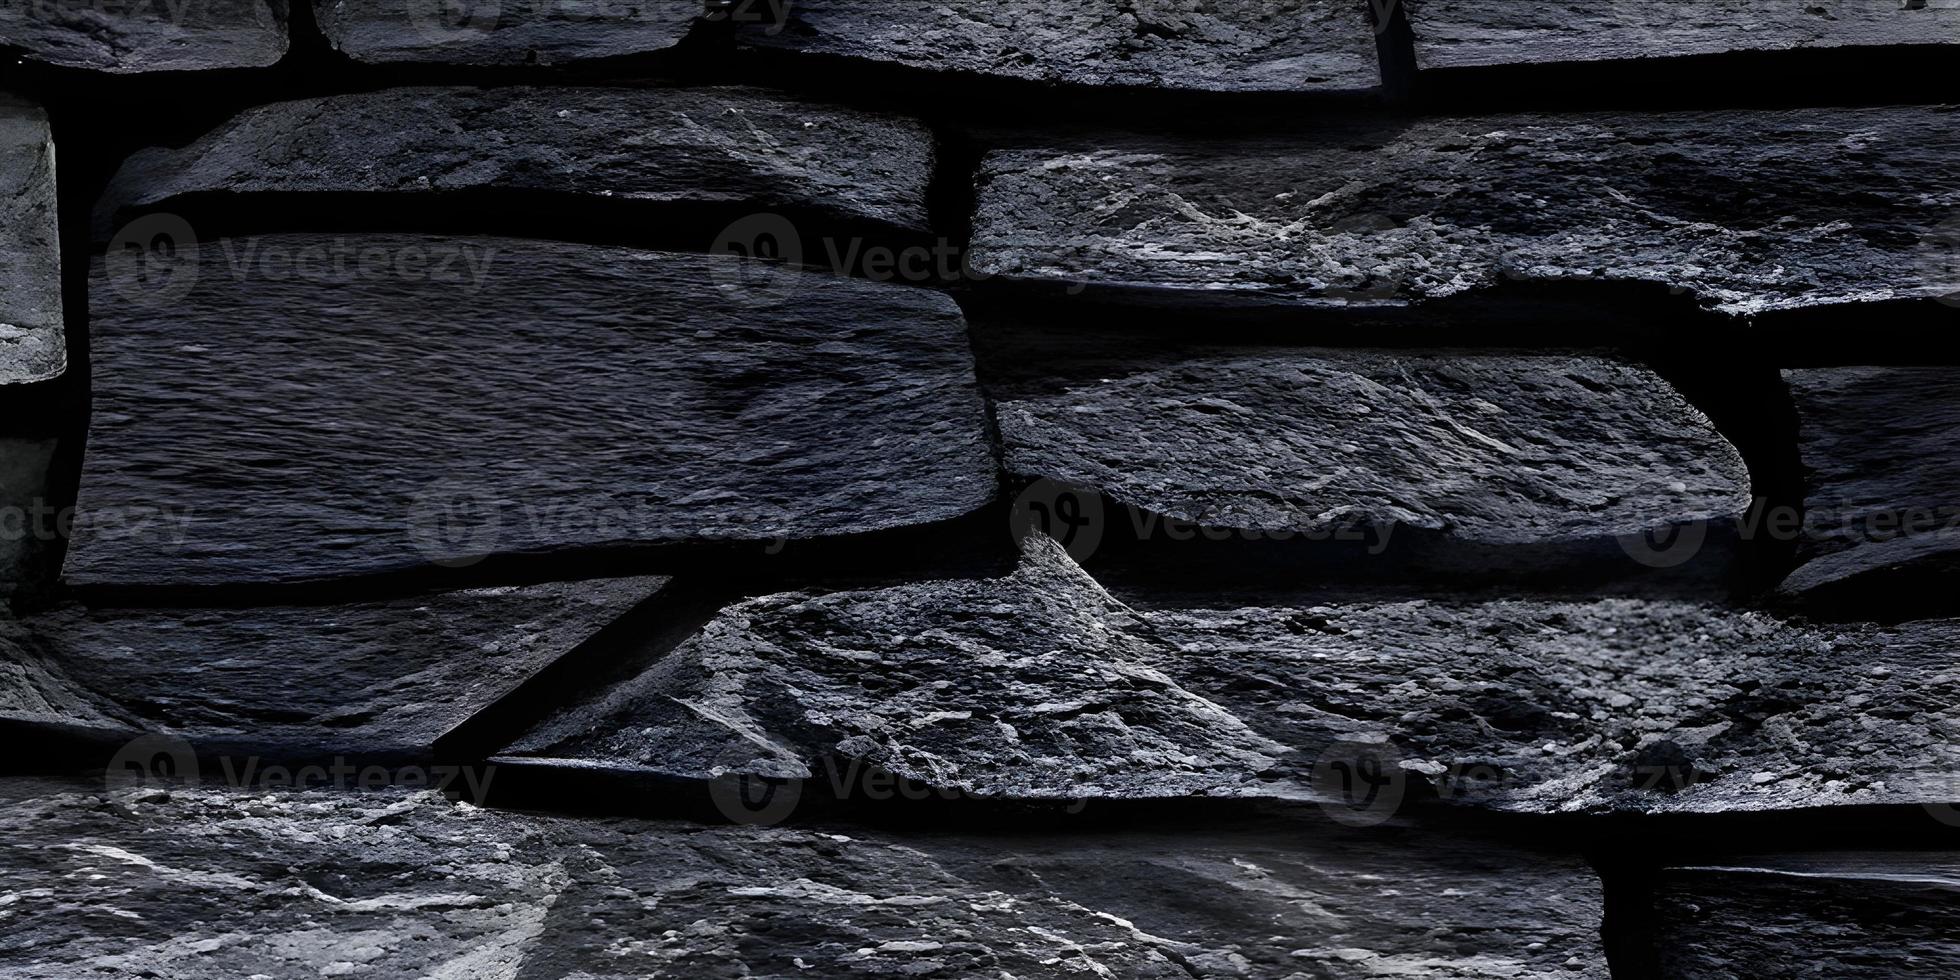 pared de ladrillo negro de textura y fondo de piedra oscura, imagen amplia del suelo de piedra foto